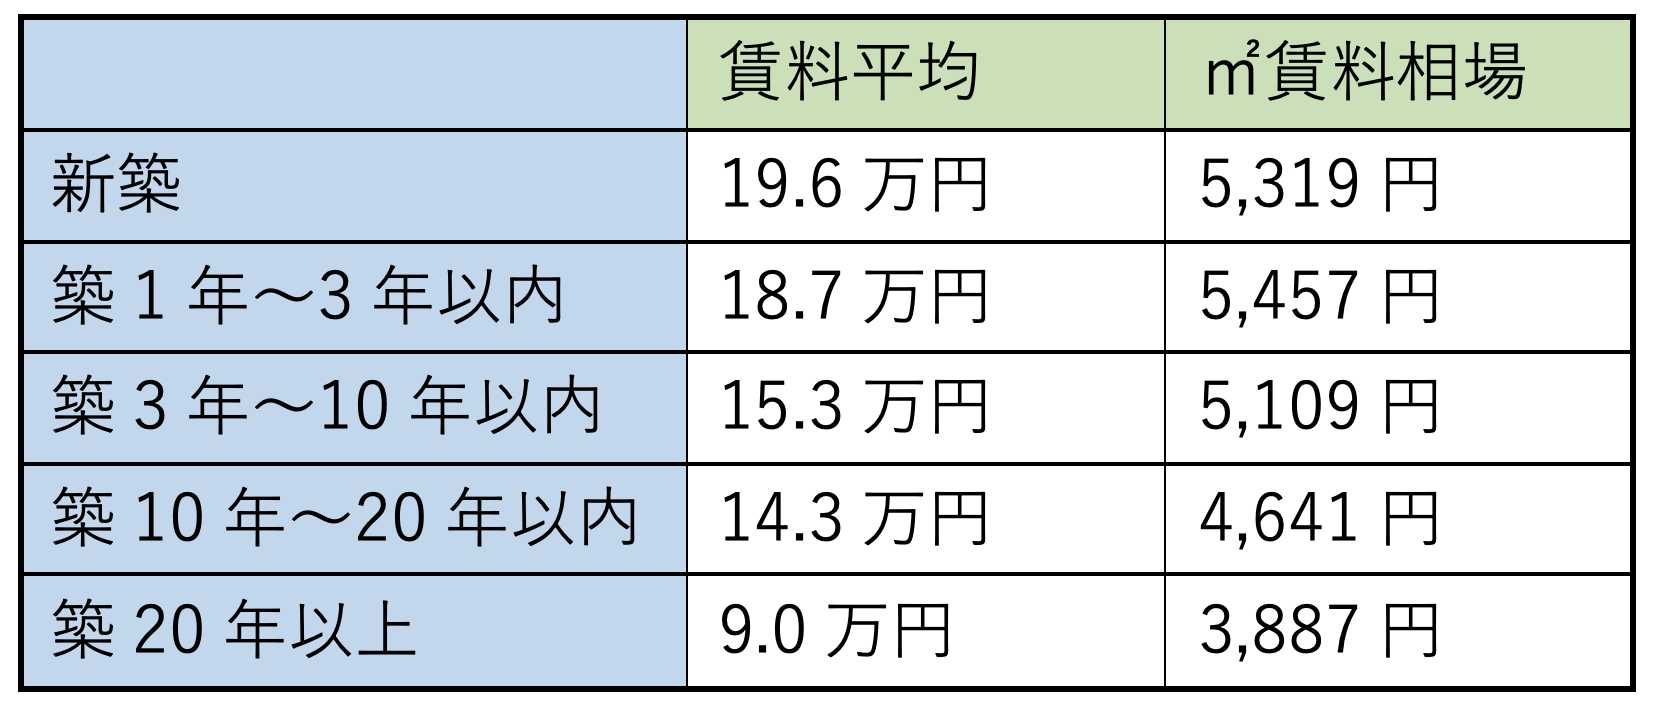 新宿区のスーモ掲載物件の築年別賃料平均と�u単価(2021年9月22日プリンシプル住まい総研調べ)